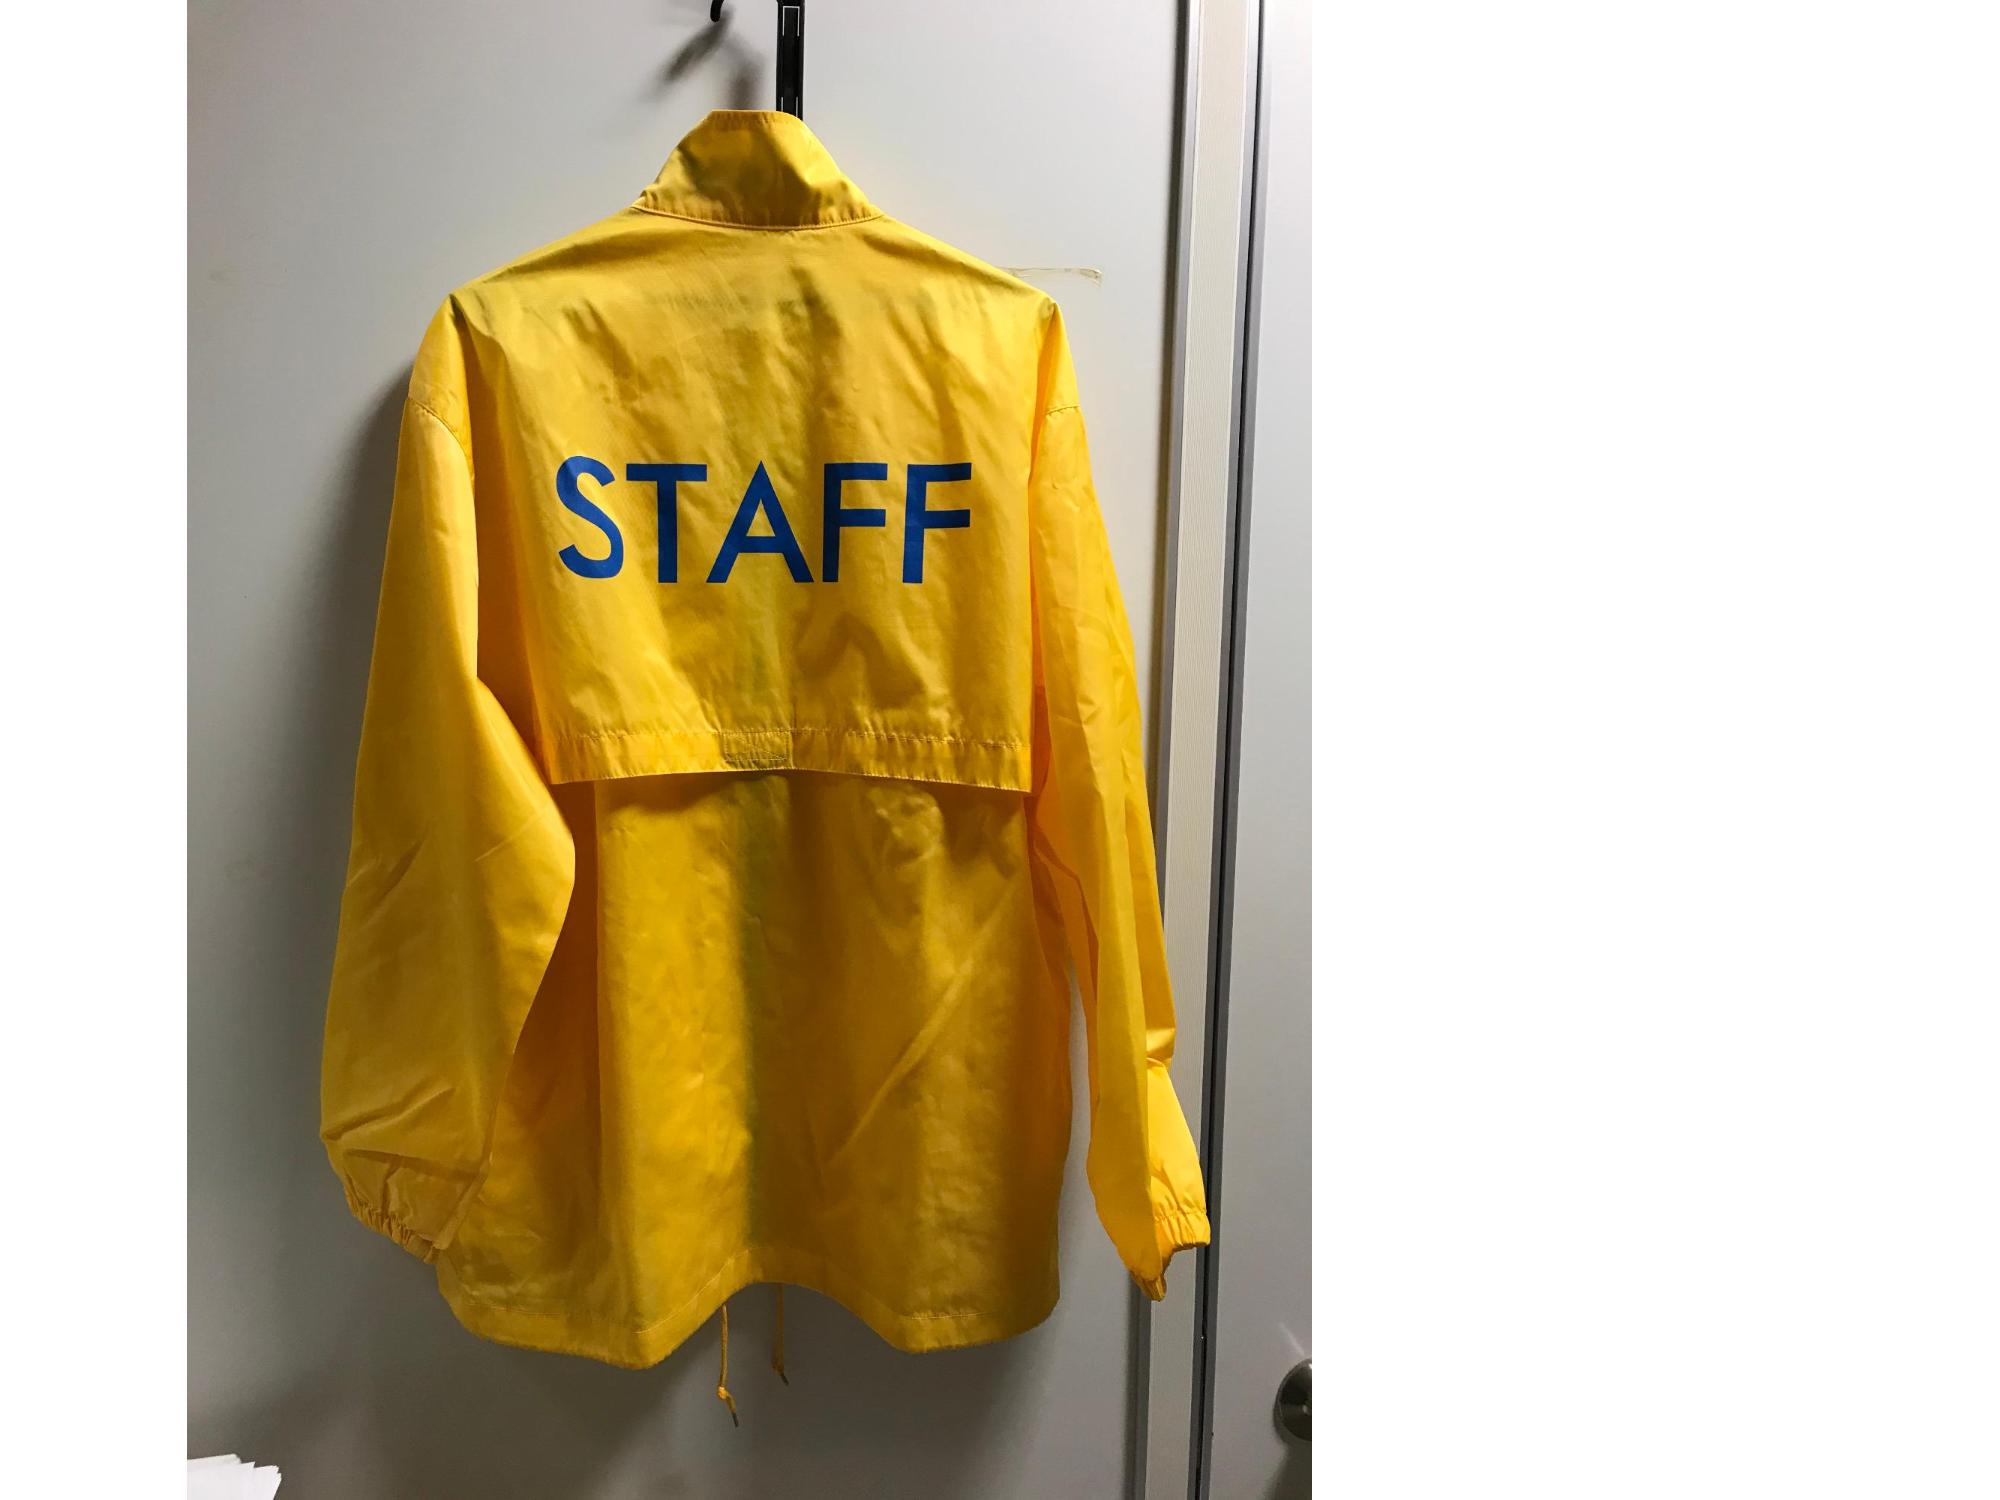 男性が着用している後ろにSTAFFを青文字で書かれた黄色いスタッフジャンパーの写真